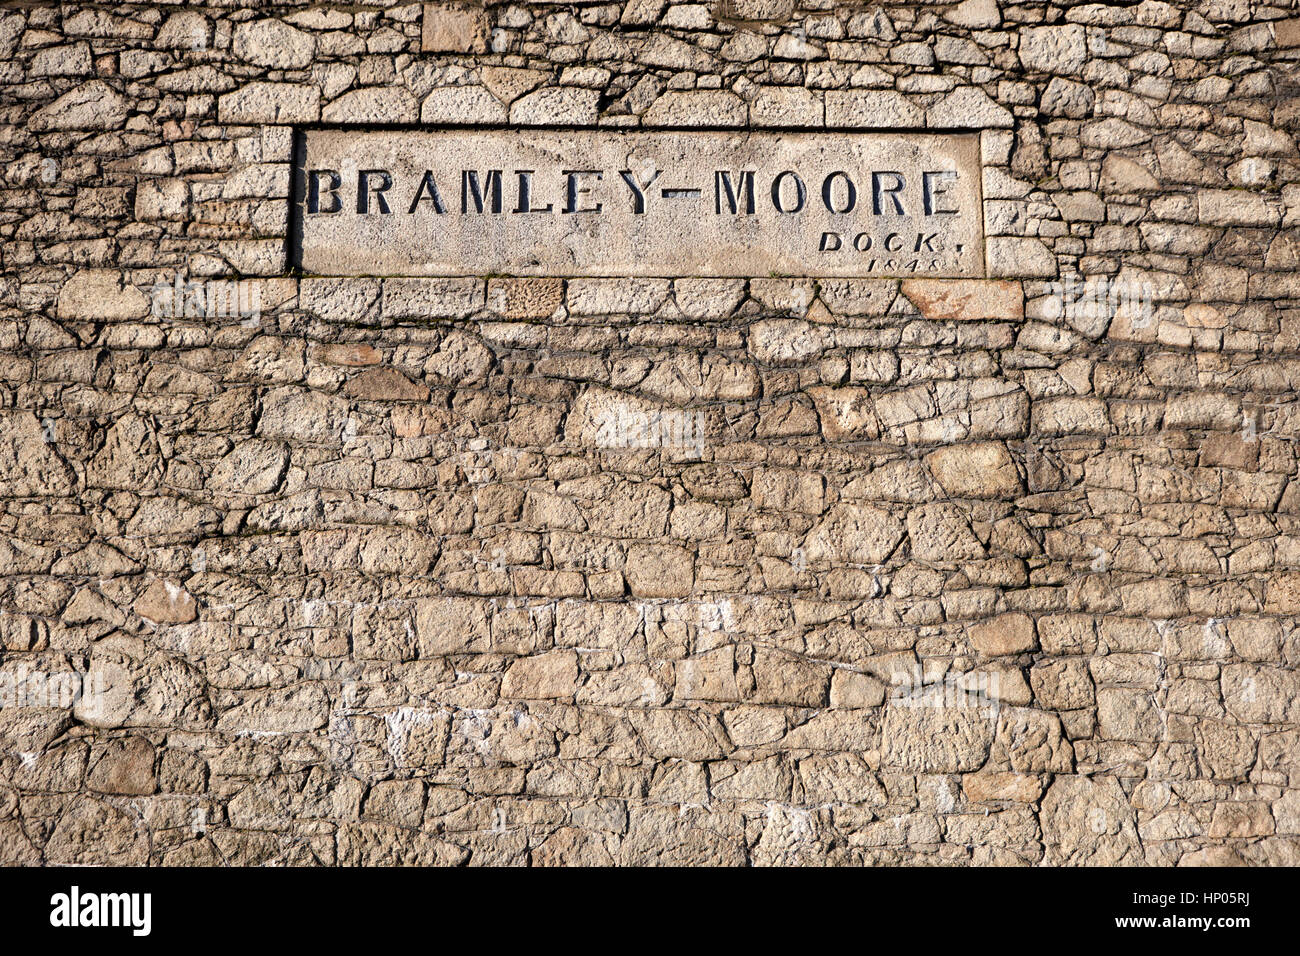 Bramley moore-dock liverpool docks dockland uk Banque D'Images